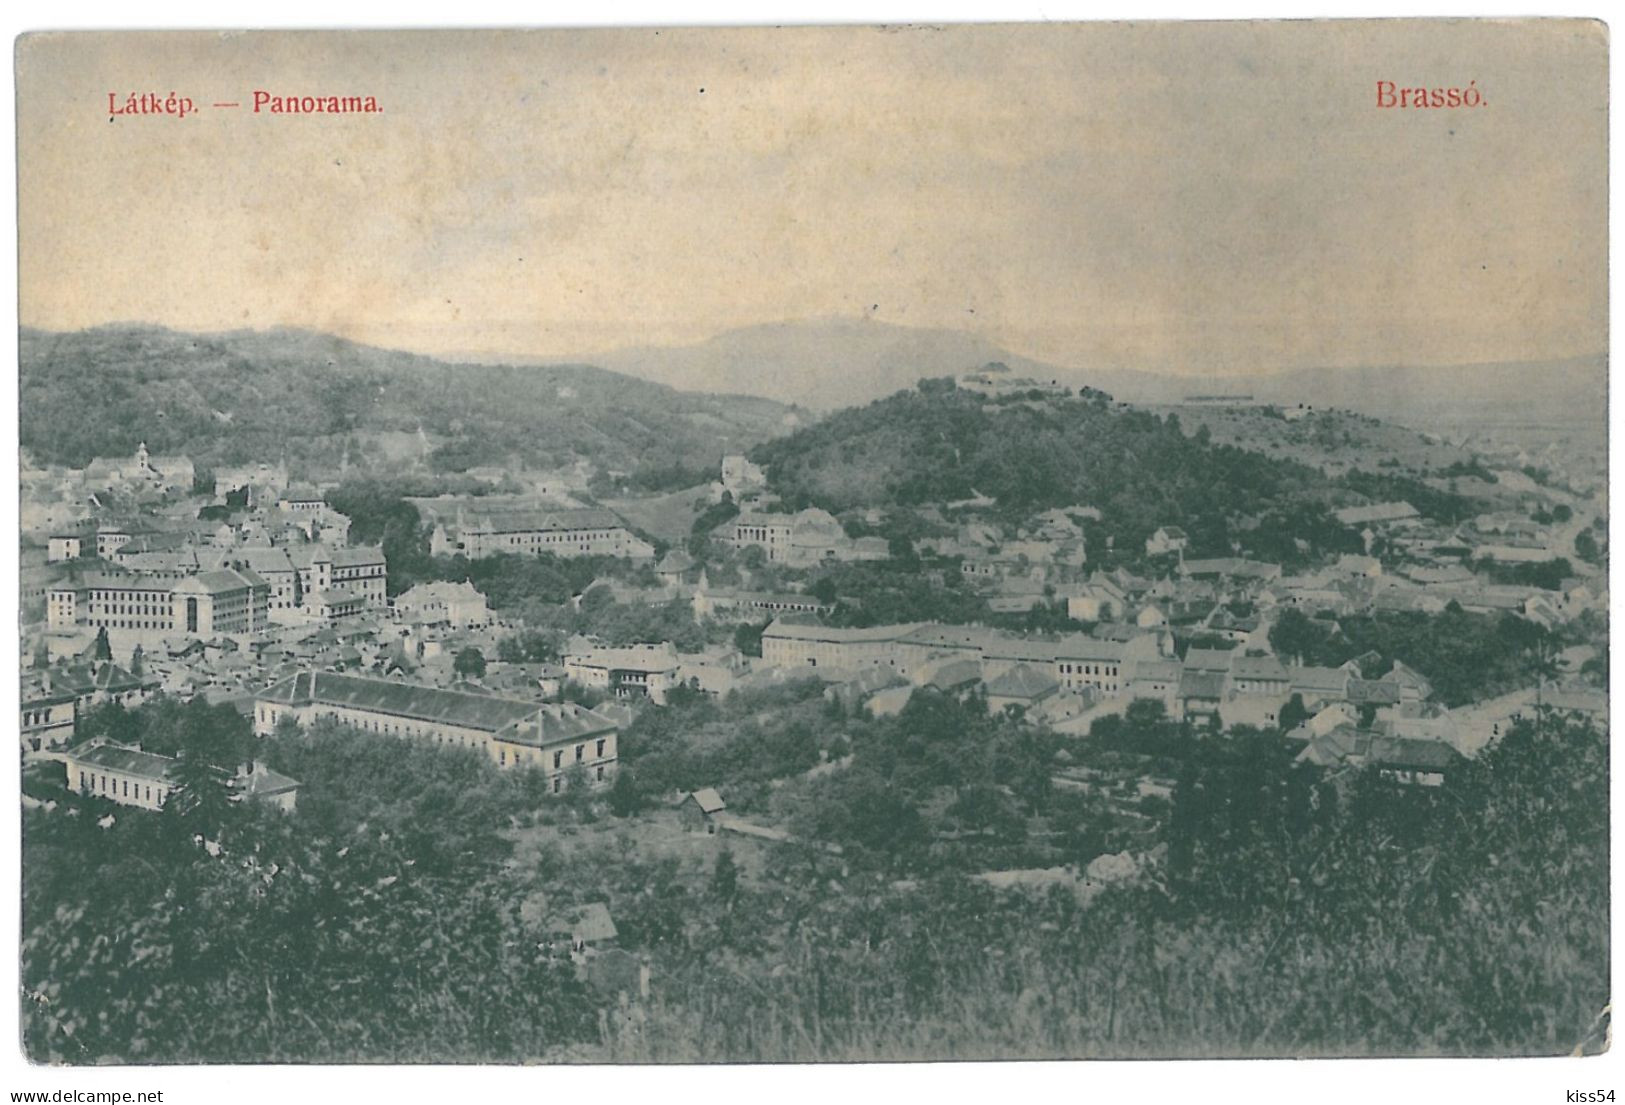 RO 47 - 11987 BRASOV, Romania, Panorama - Old Postcard - Unused - Romania